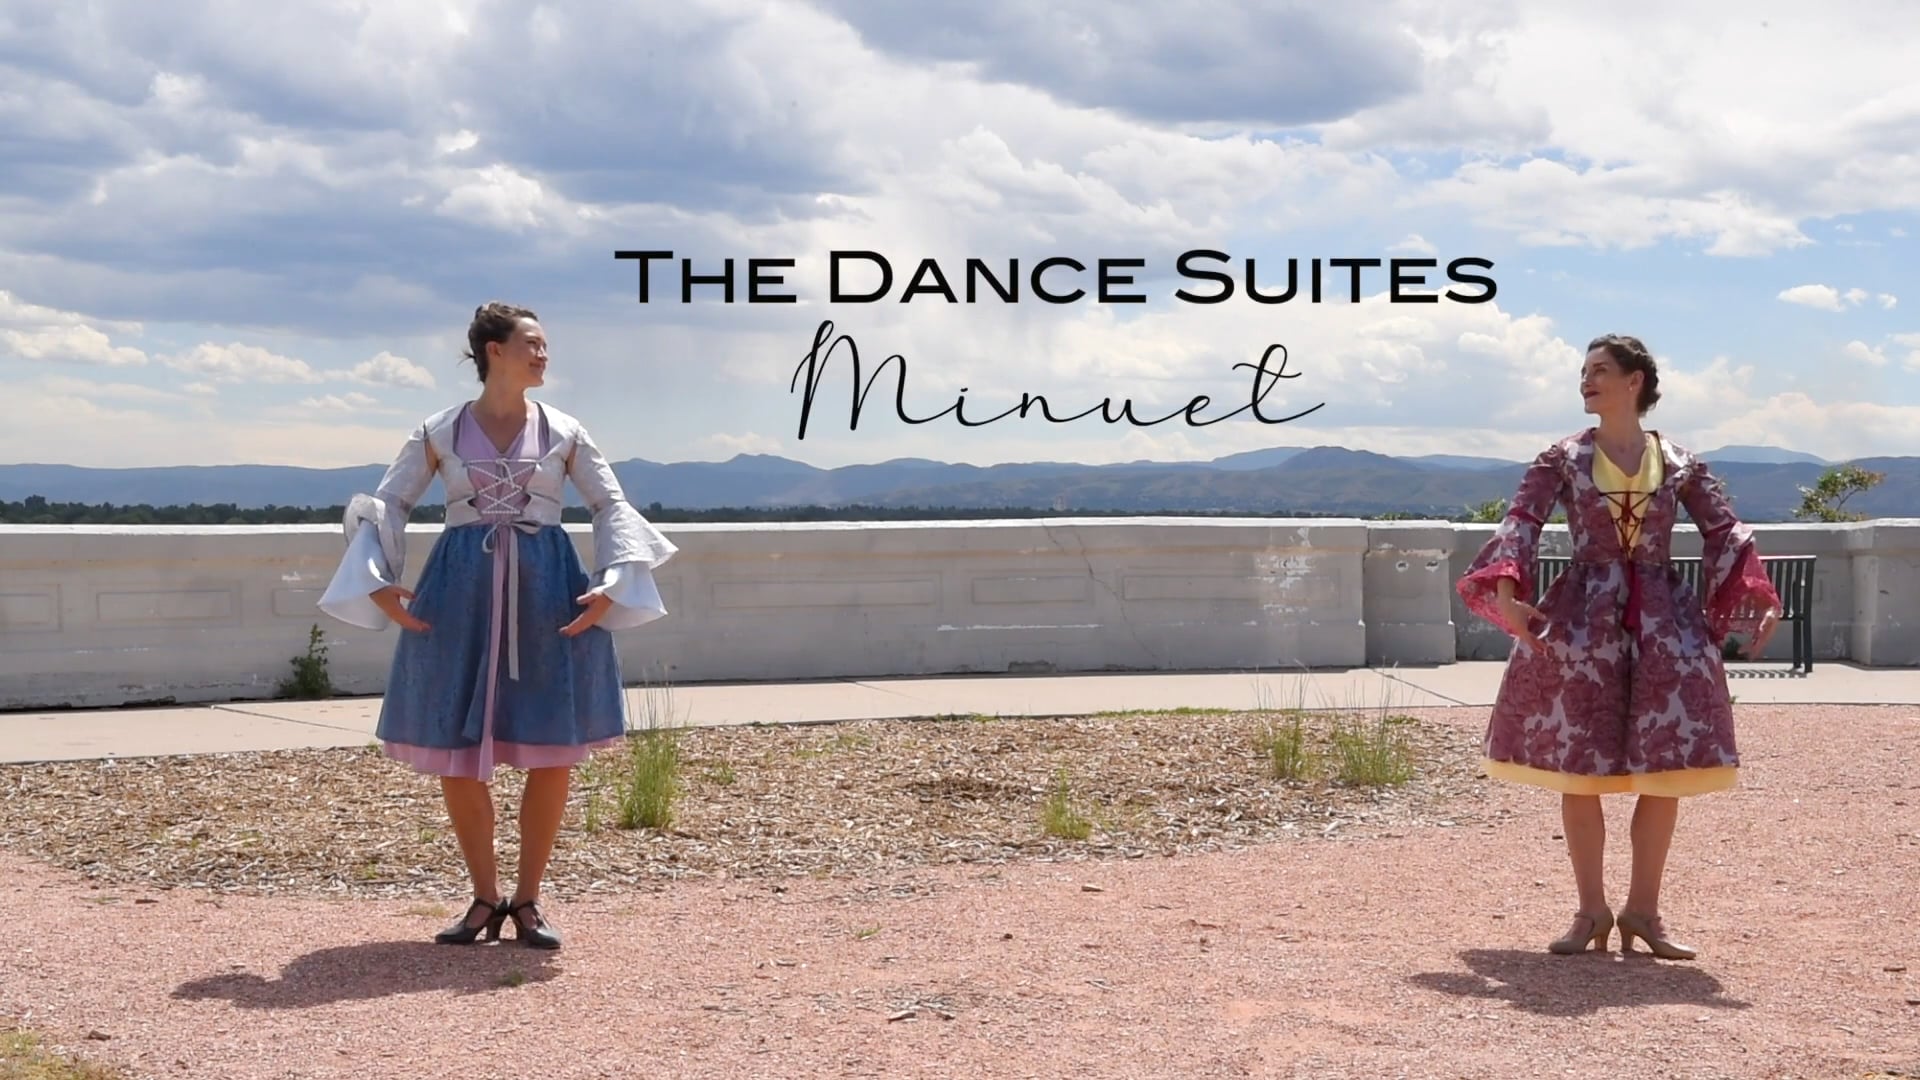 The Dance Suites: Minuet